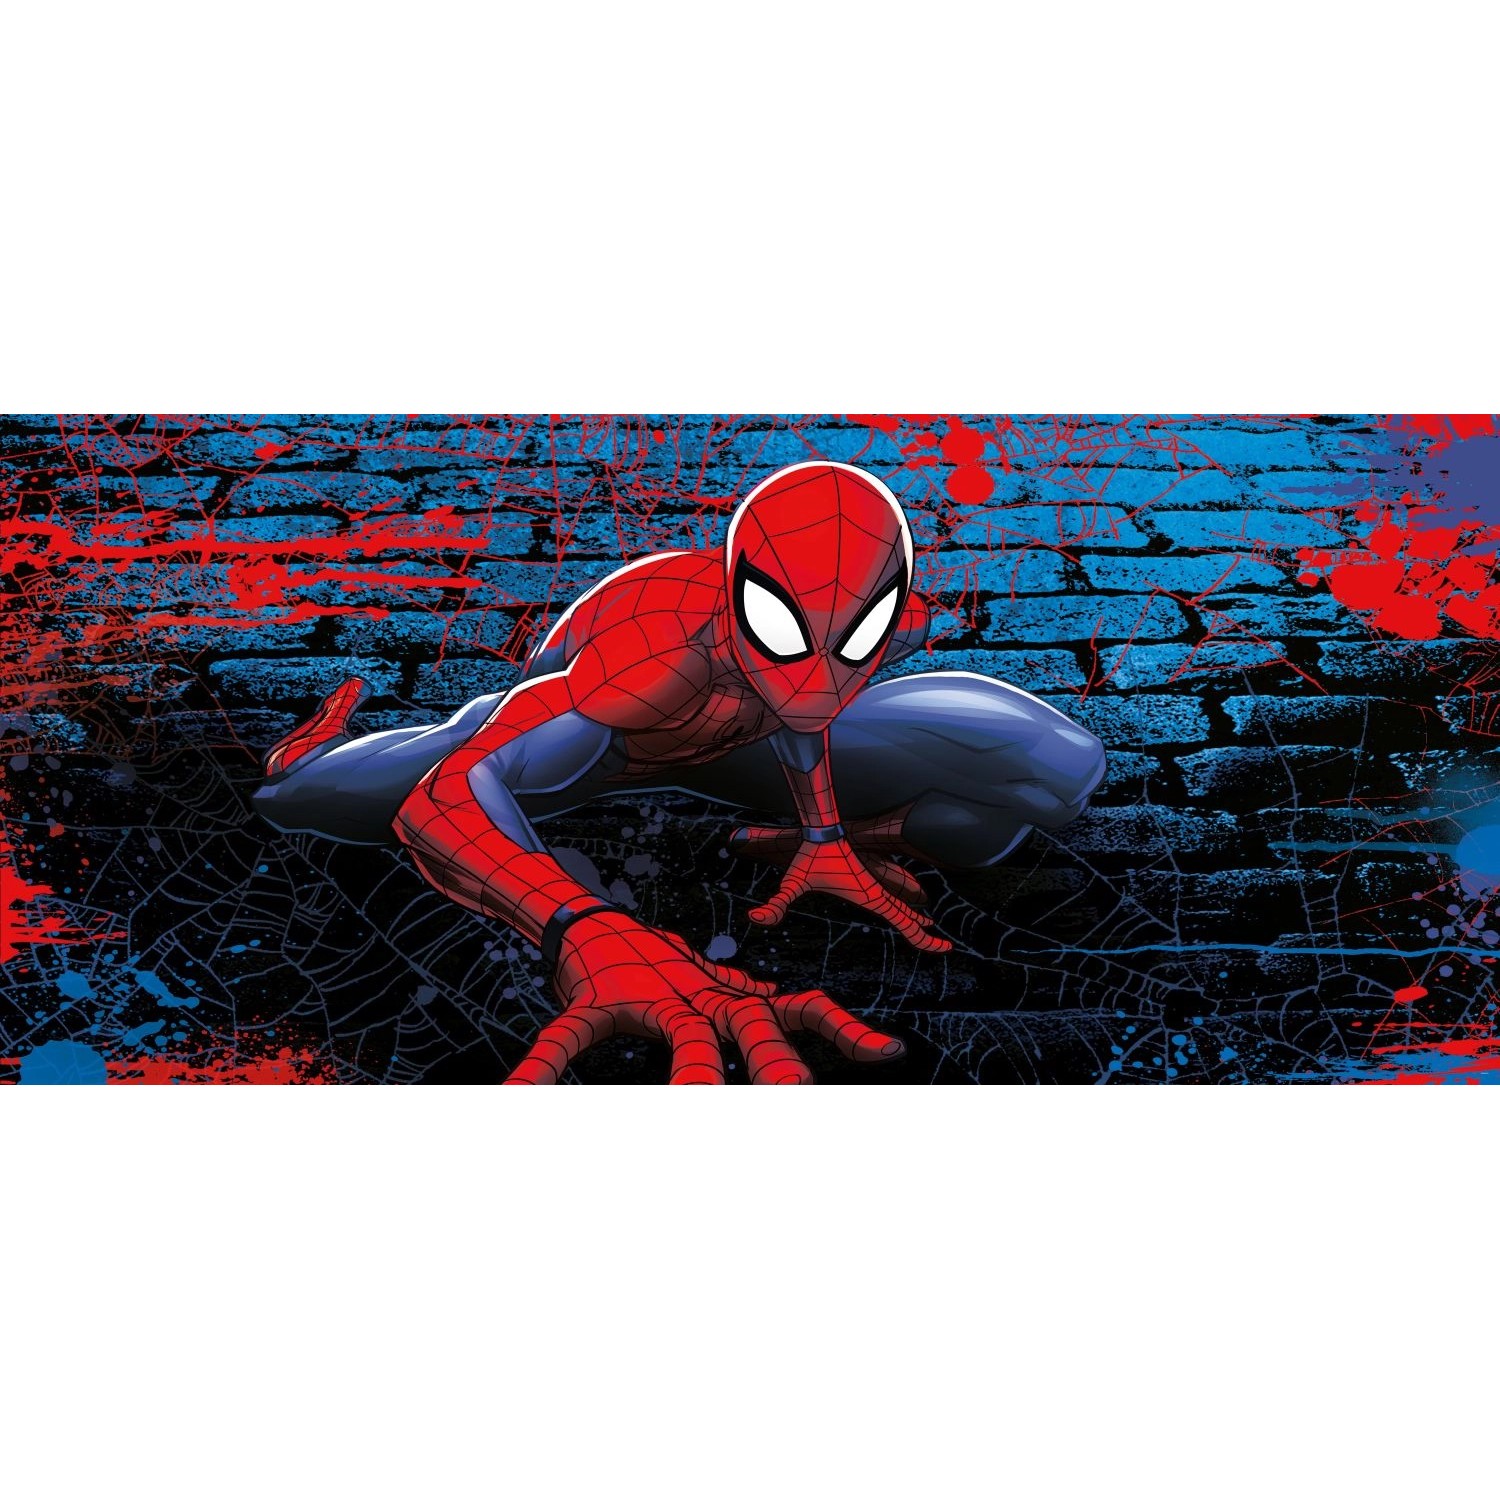 Sanders & Sanders Poster Spider-Man Rot und Blau 0,9 x 2,02 m 601084 günstig online kaufen